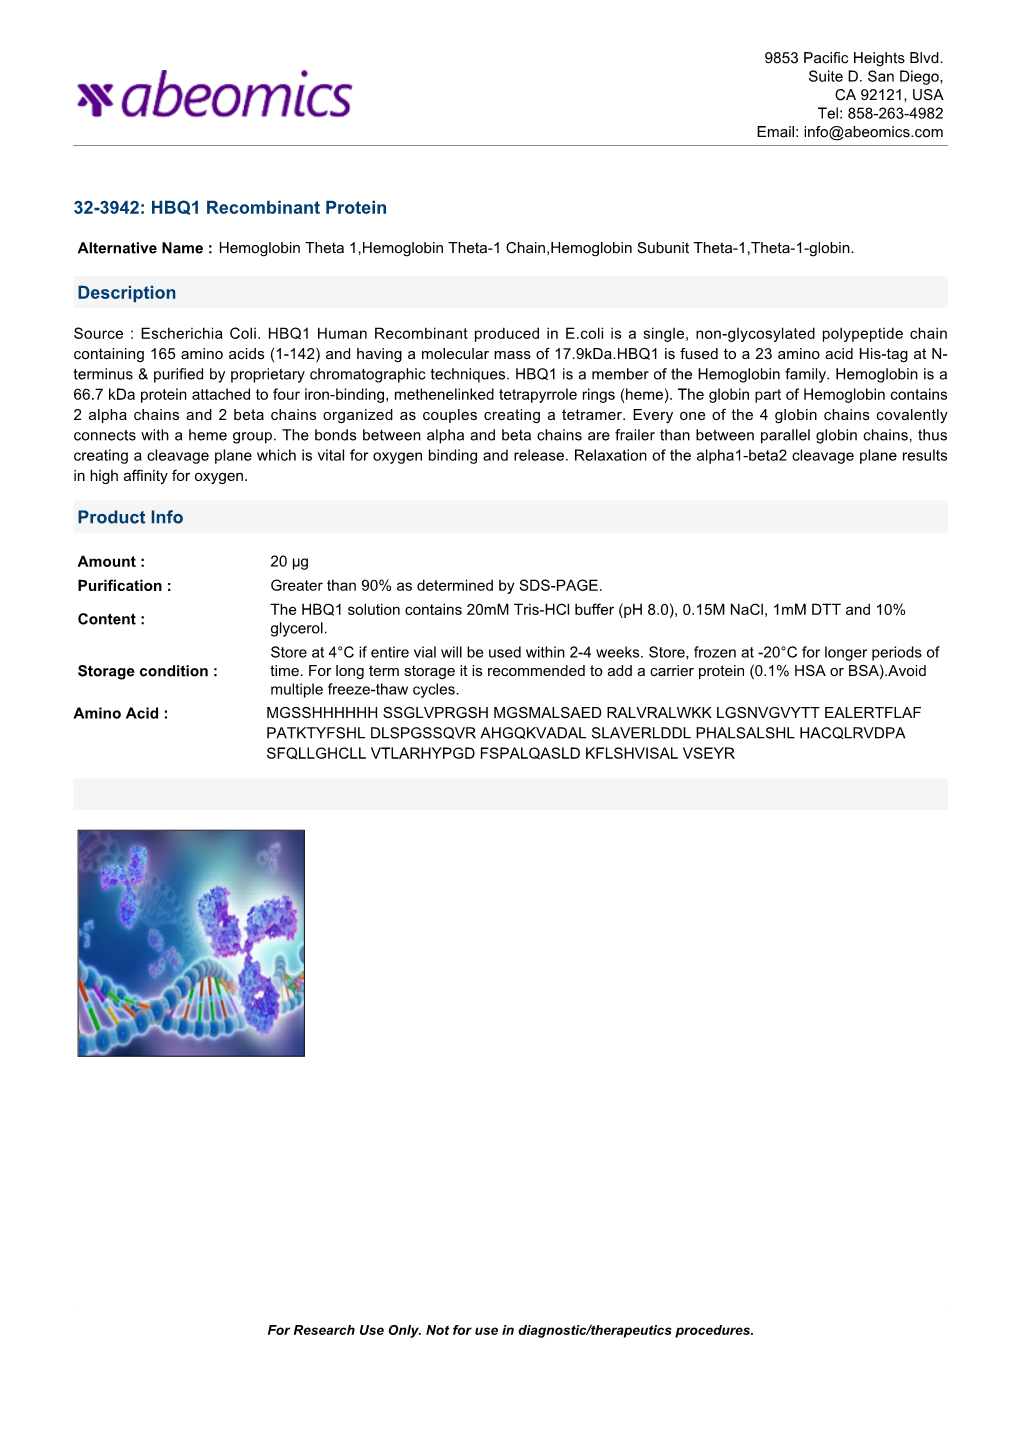 32-3942: HBQ1 Recombinant Protein Description